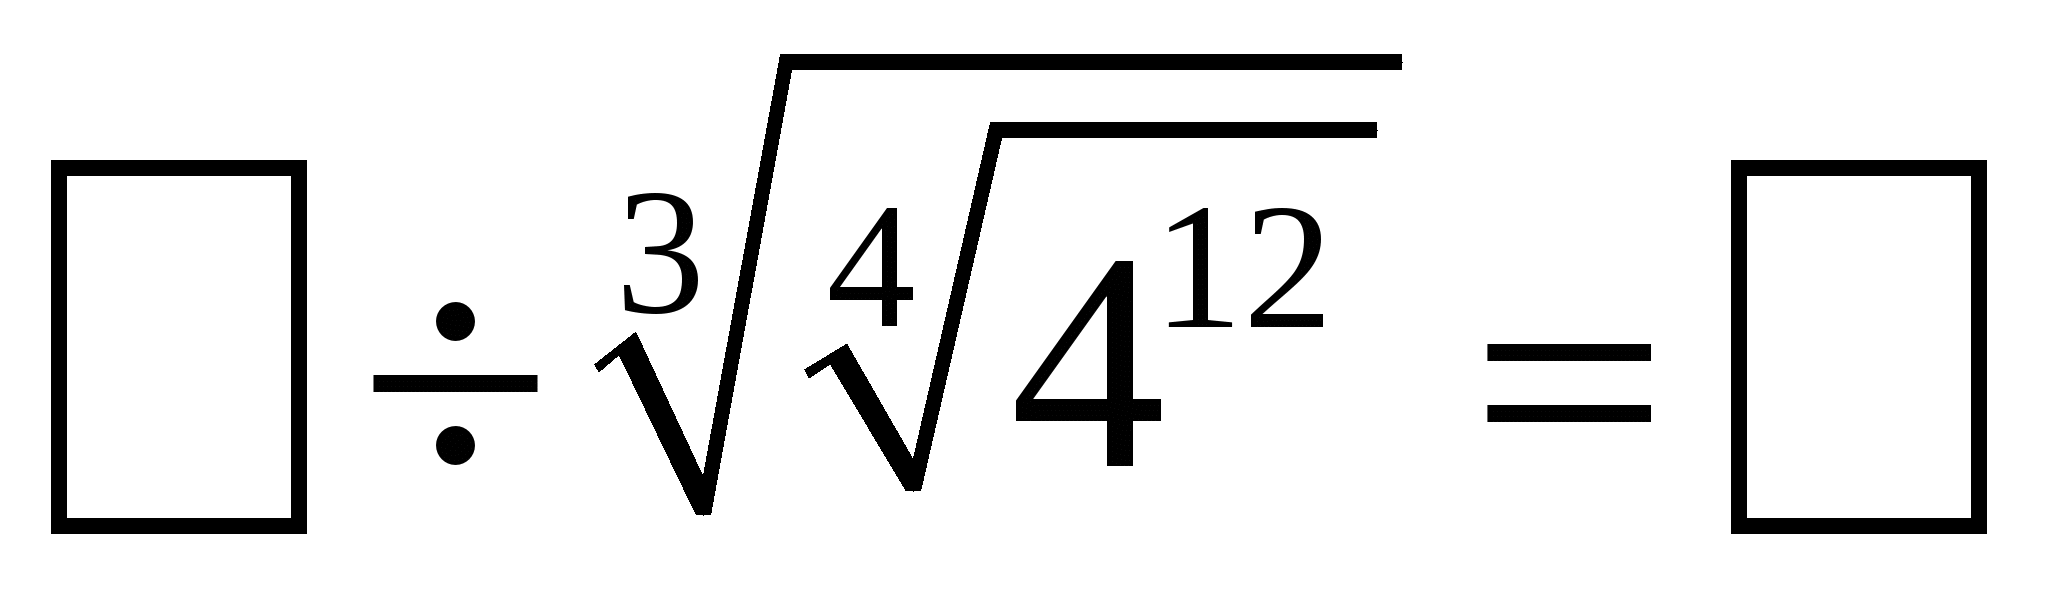 Корень из 49 равен